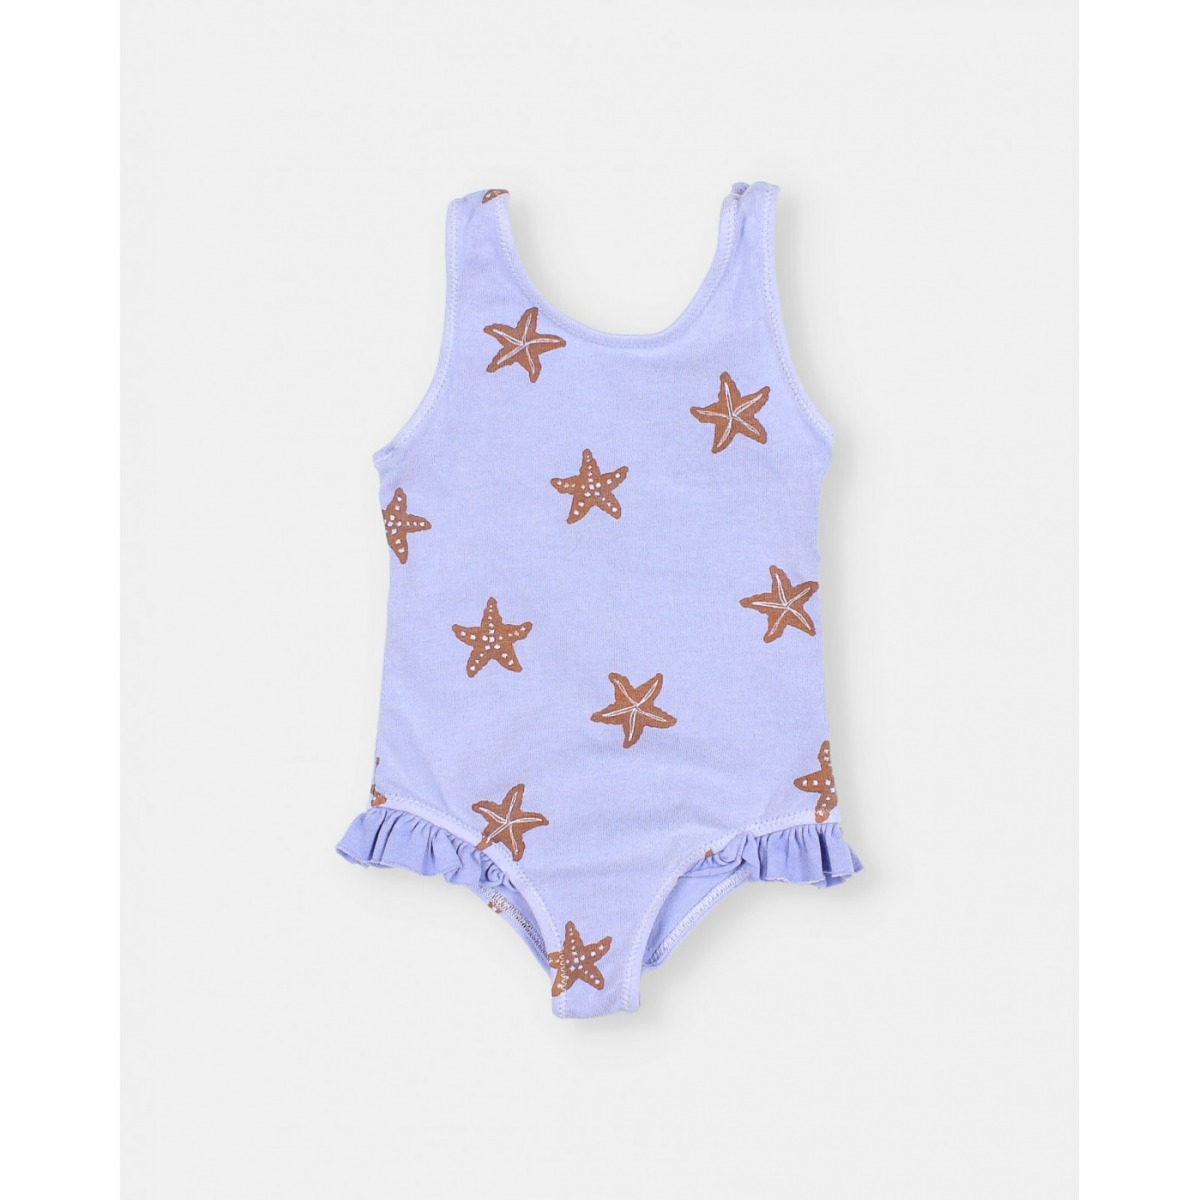 Bañador bebé niña Starfish lavender de Búho. comprar bañadores Búho.